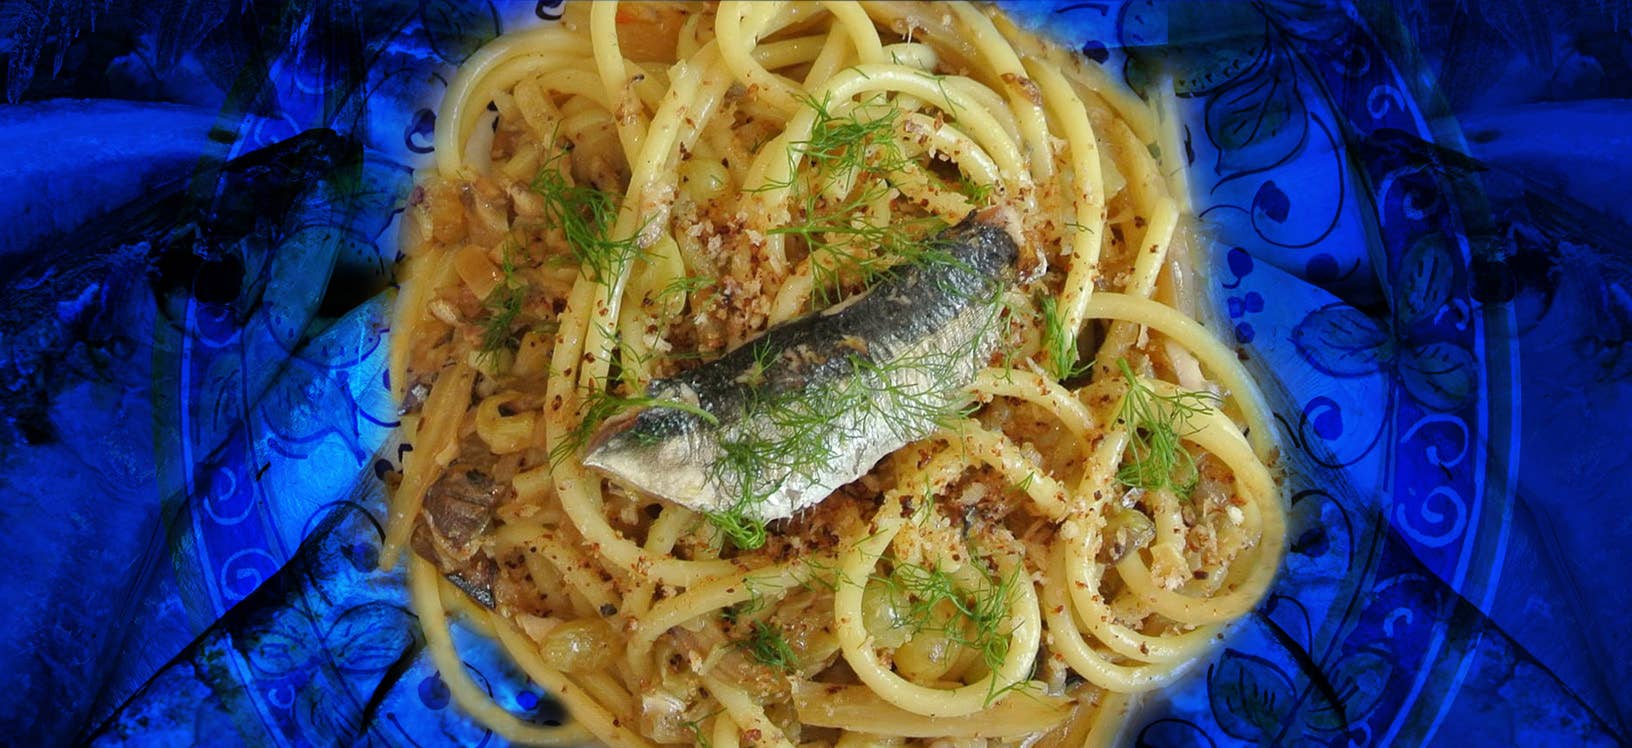 Pollastrini Sardines in Olive Oil